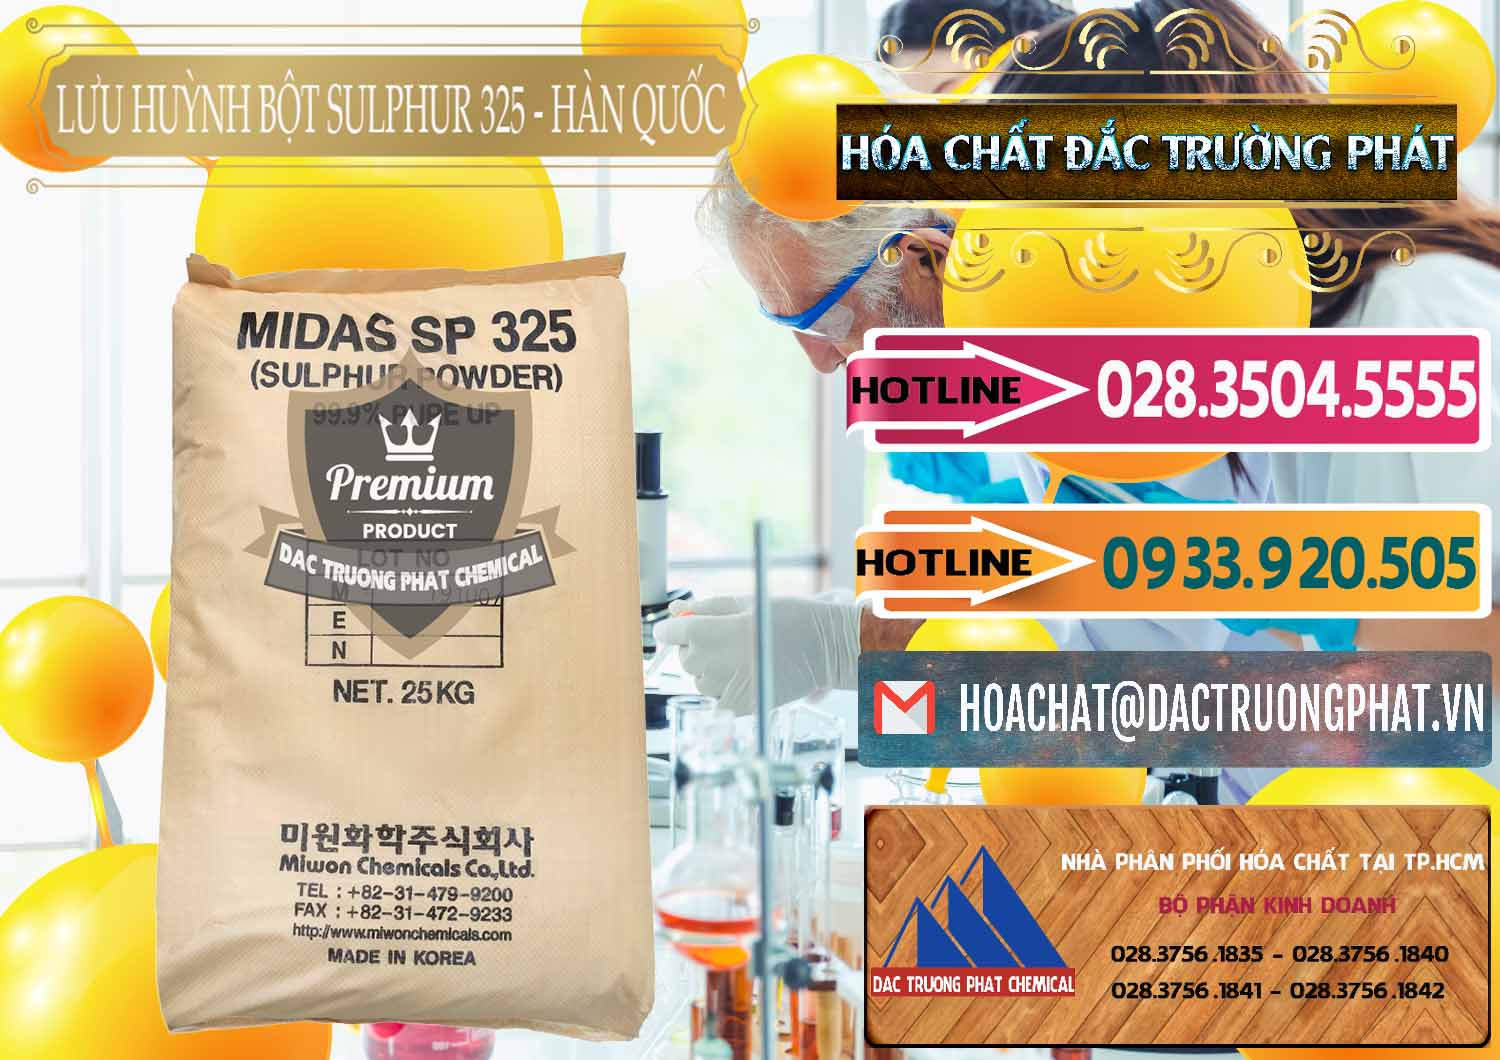 Cty chuyên bán - phân phối Lưu huỳnh Bột - Sulfur Powder Midas SP 325 Hàn Quốc Korea - 0198 - Nơi phân phối _ cung cấp hóa chất tại TP.HCM - dactruongphat.vn